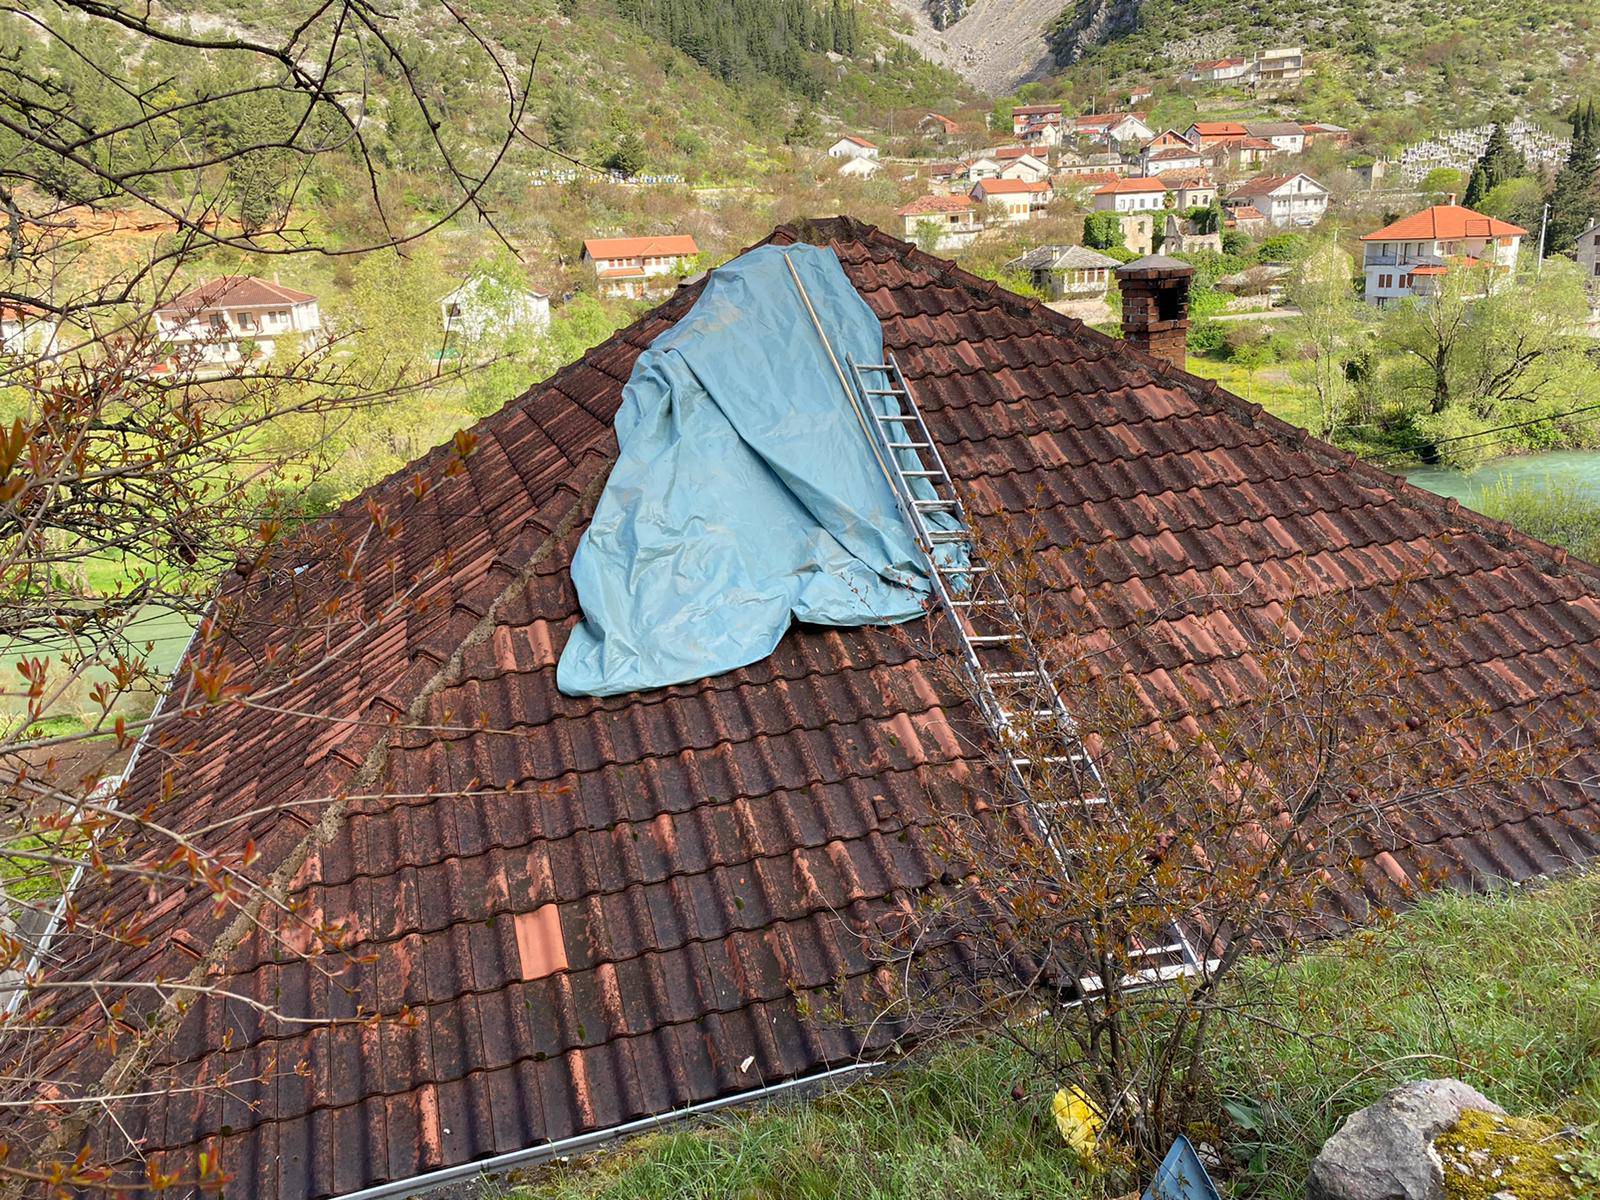 24sata uživo iz Stoca: Ovo je kuća na koju je pala golema stijena i usmrtila mladu curu